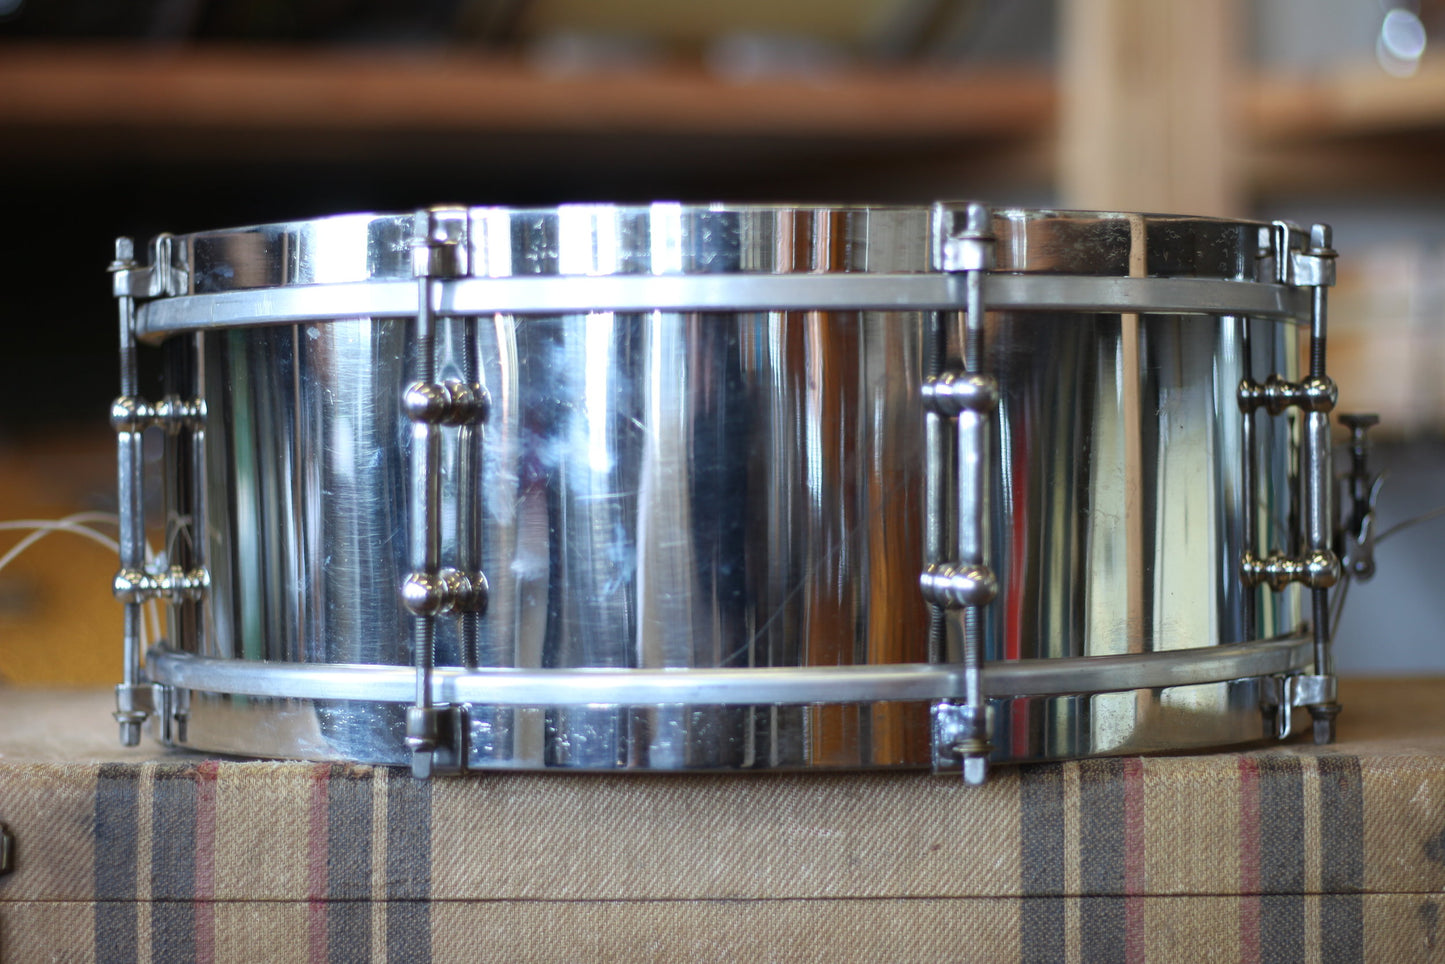 1920's Leedy Nickel over Brass 5"x14" Snare Drum